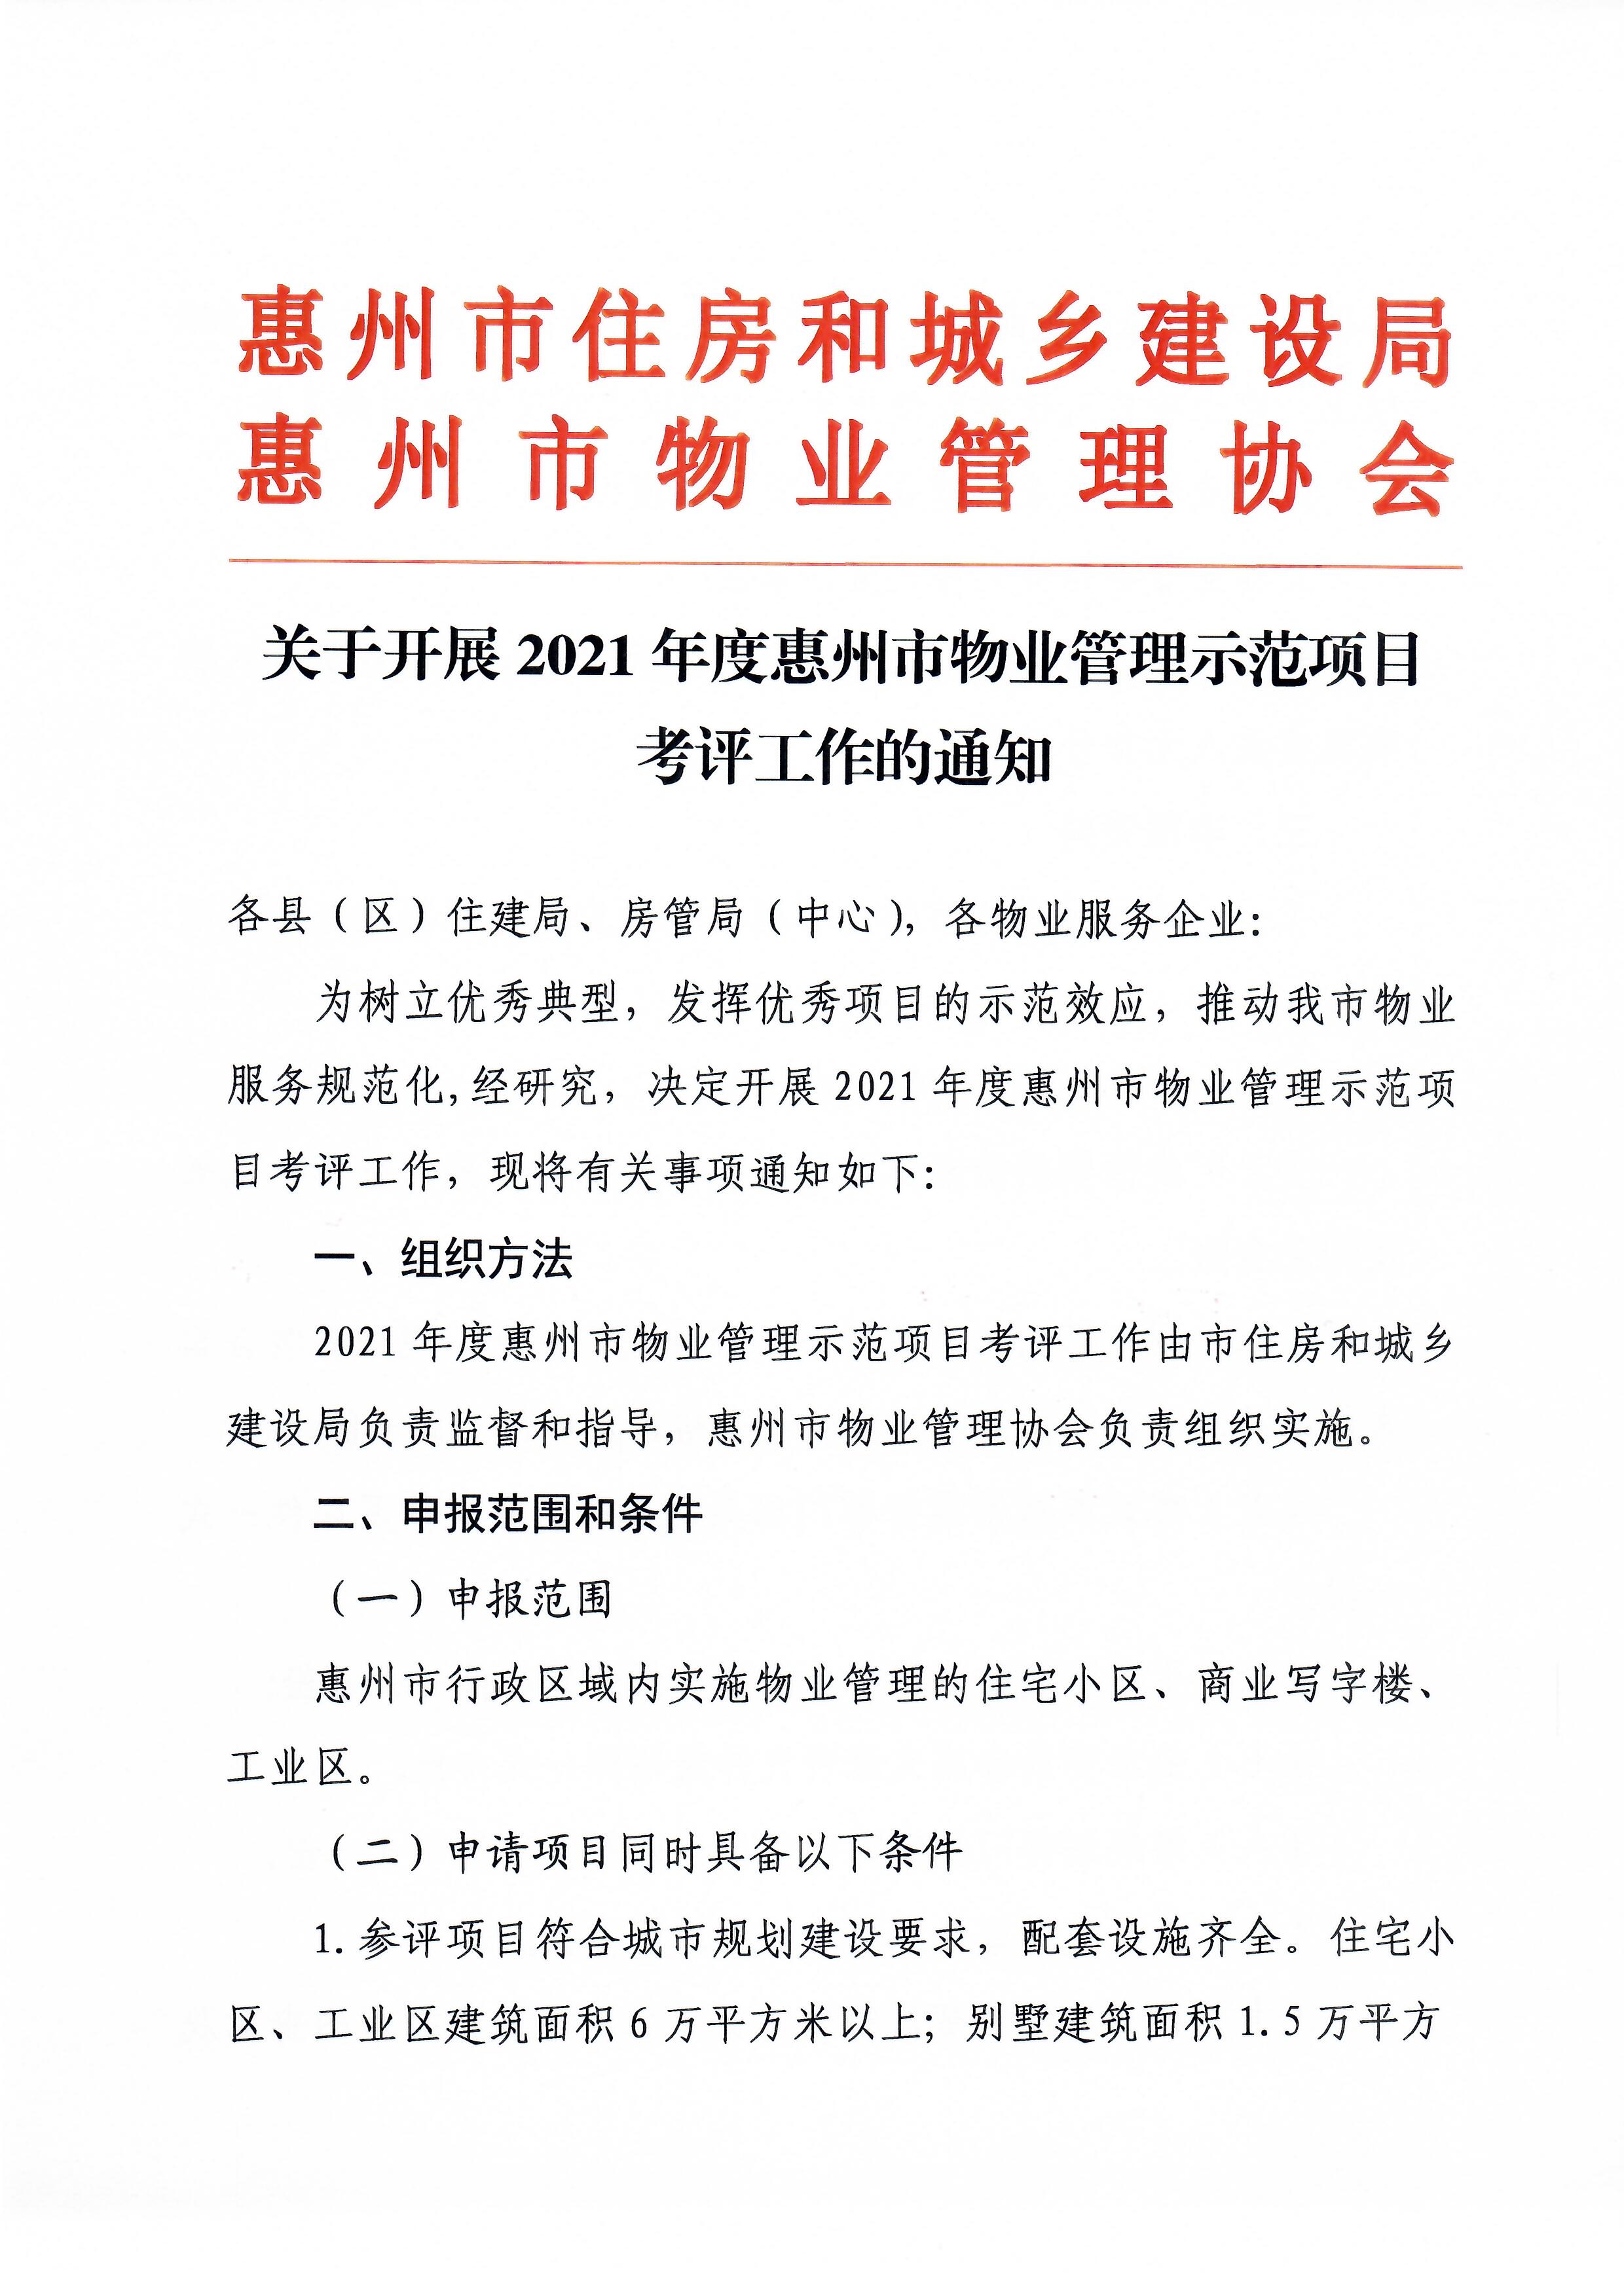 关于开展2021年度惠州市物业管理示范项目考评工作的通知1.jpg